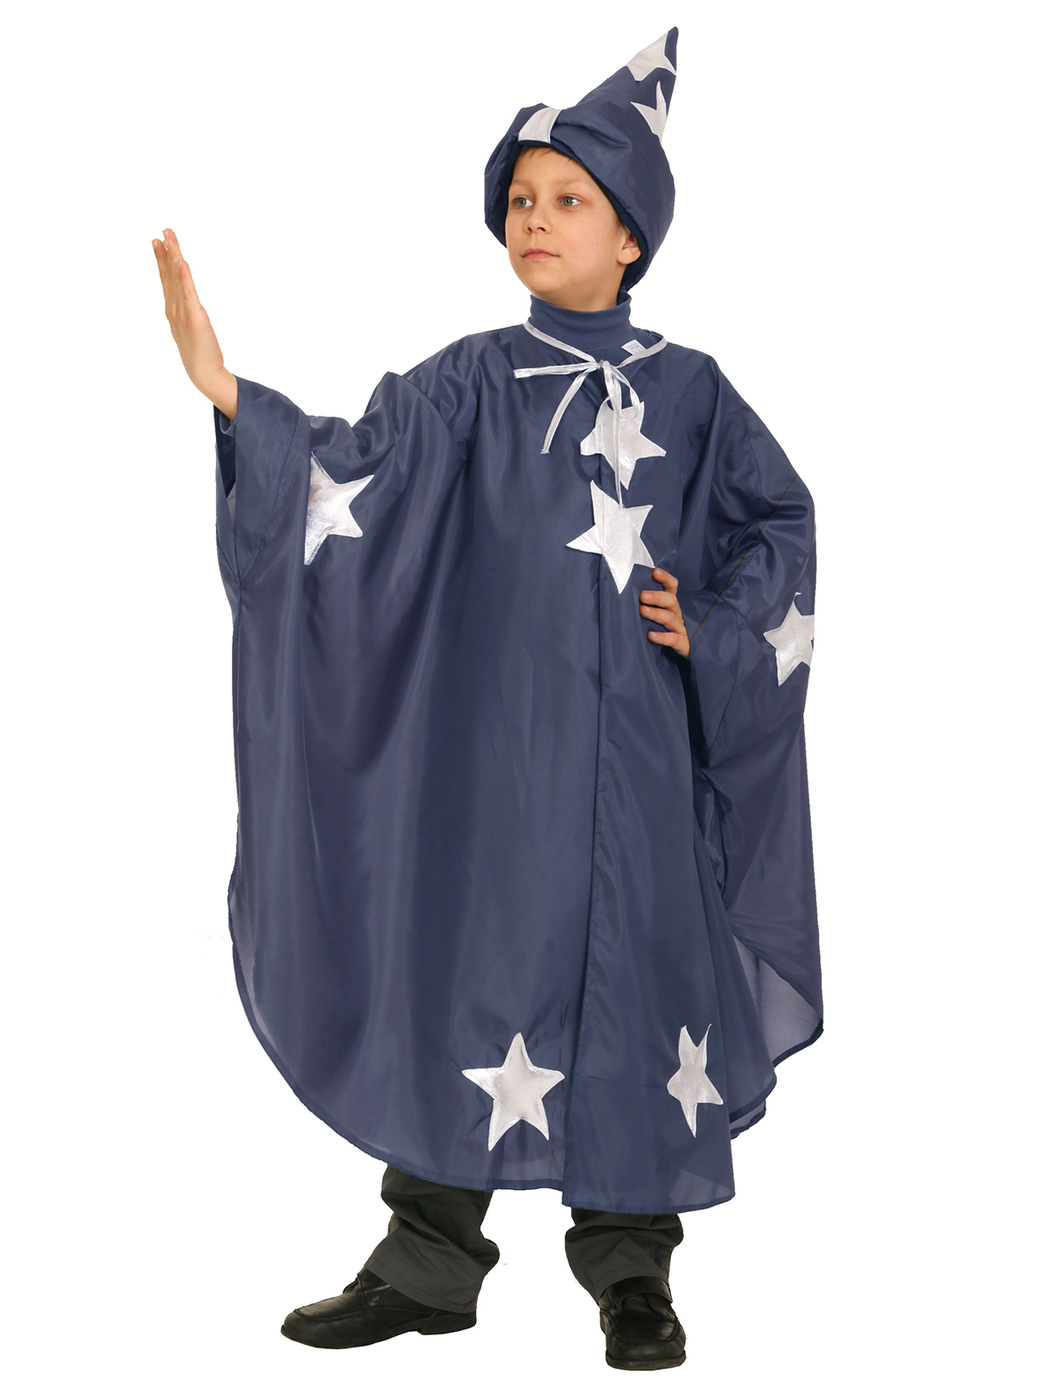 Карнавальный костюм детский Вестифика Звездочет, синий, 116 карнавальный плащ взрослый атлас синий длина 120см